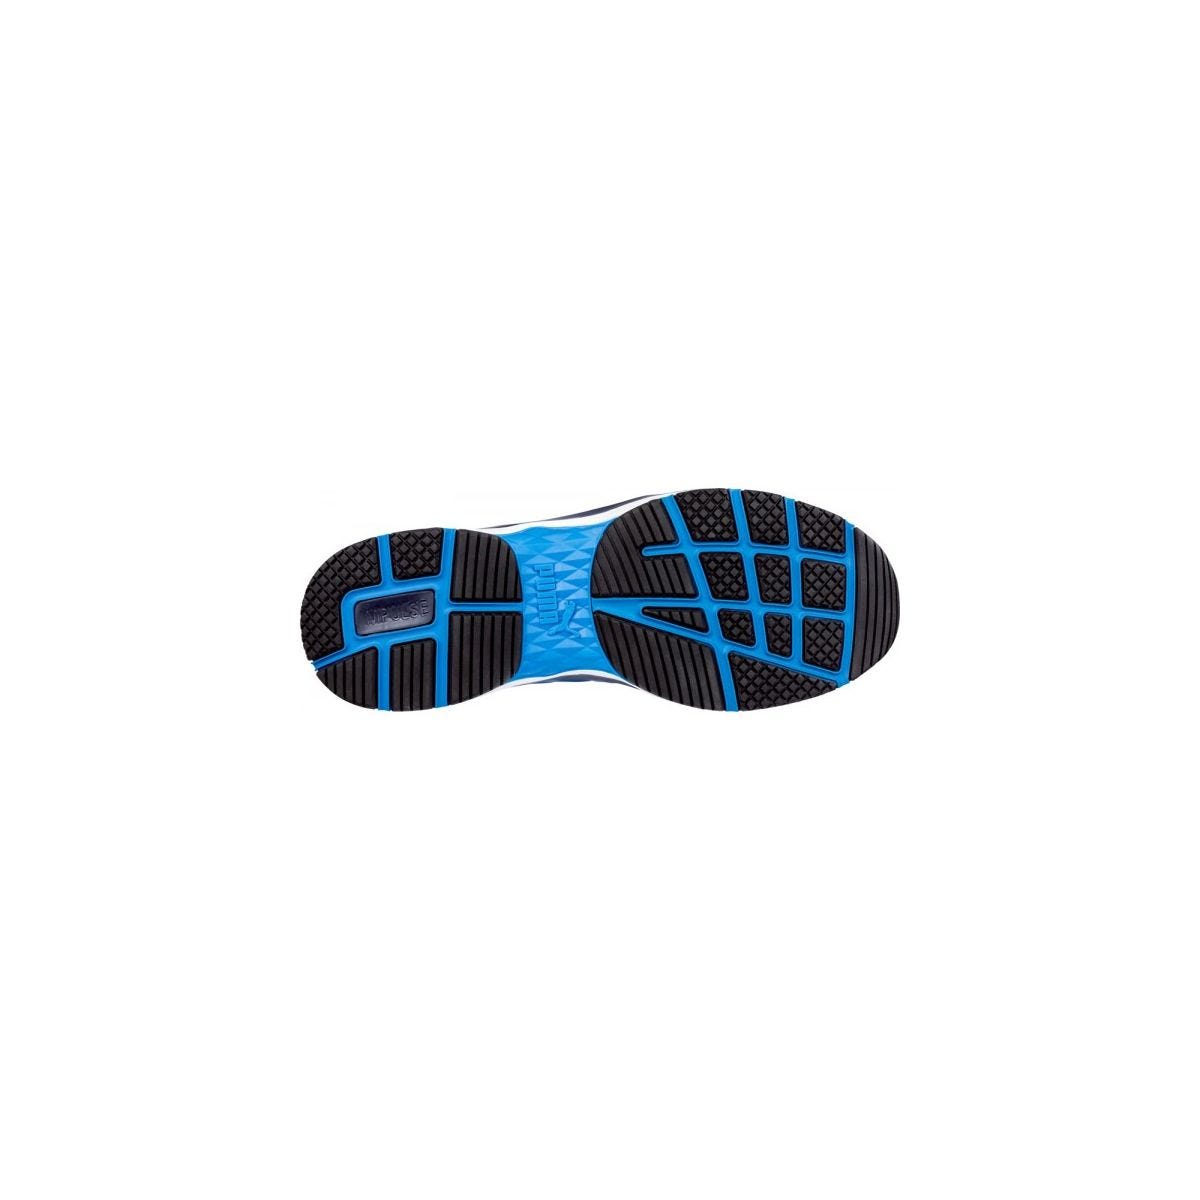 Chaussures de sécurité Velocity 2.0 Bleu Low S1P - Puma - Taille 38 4